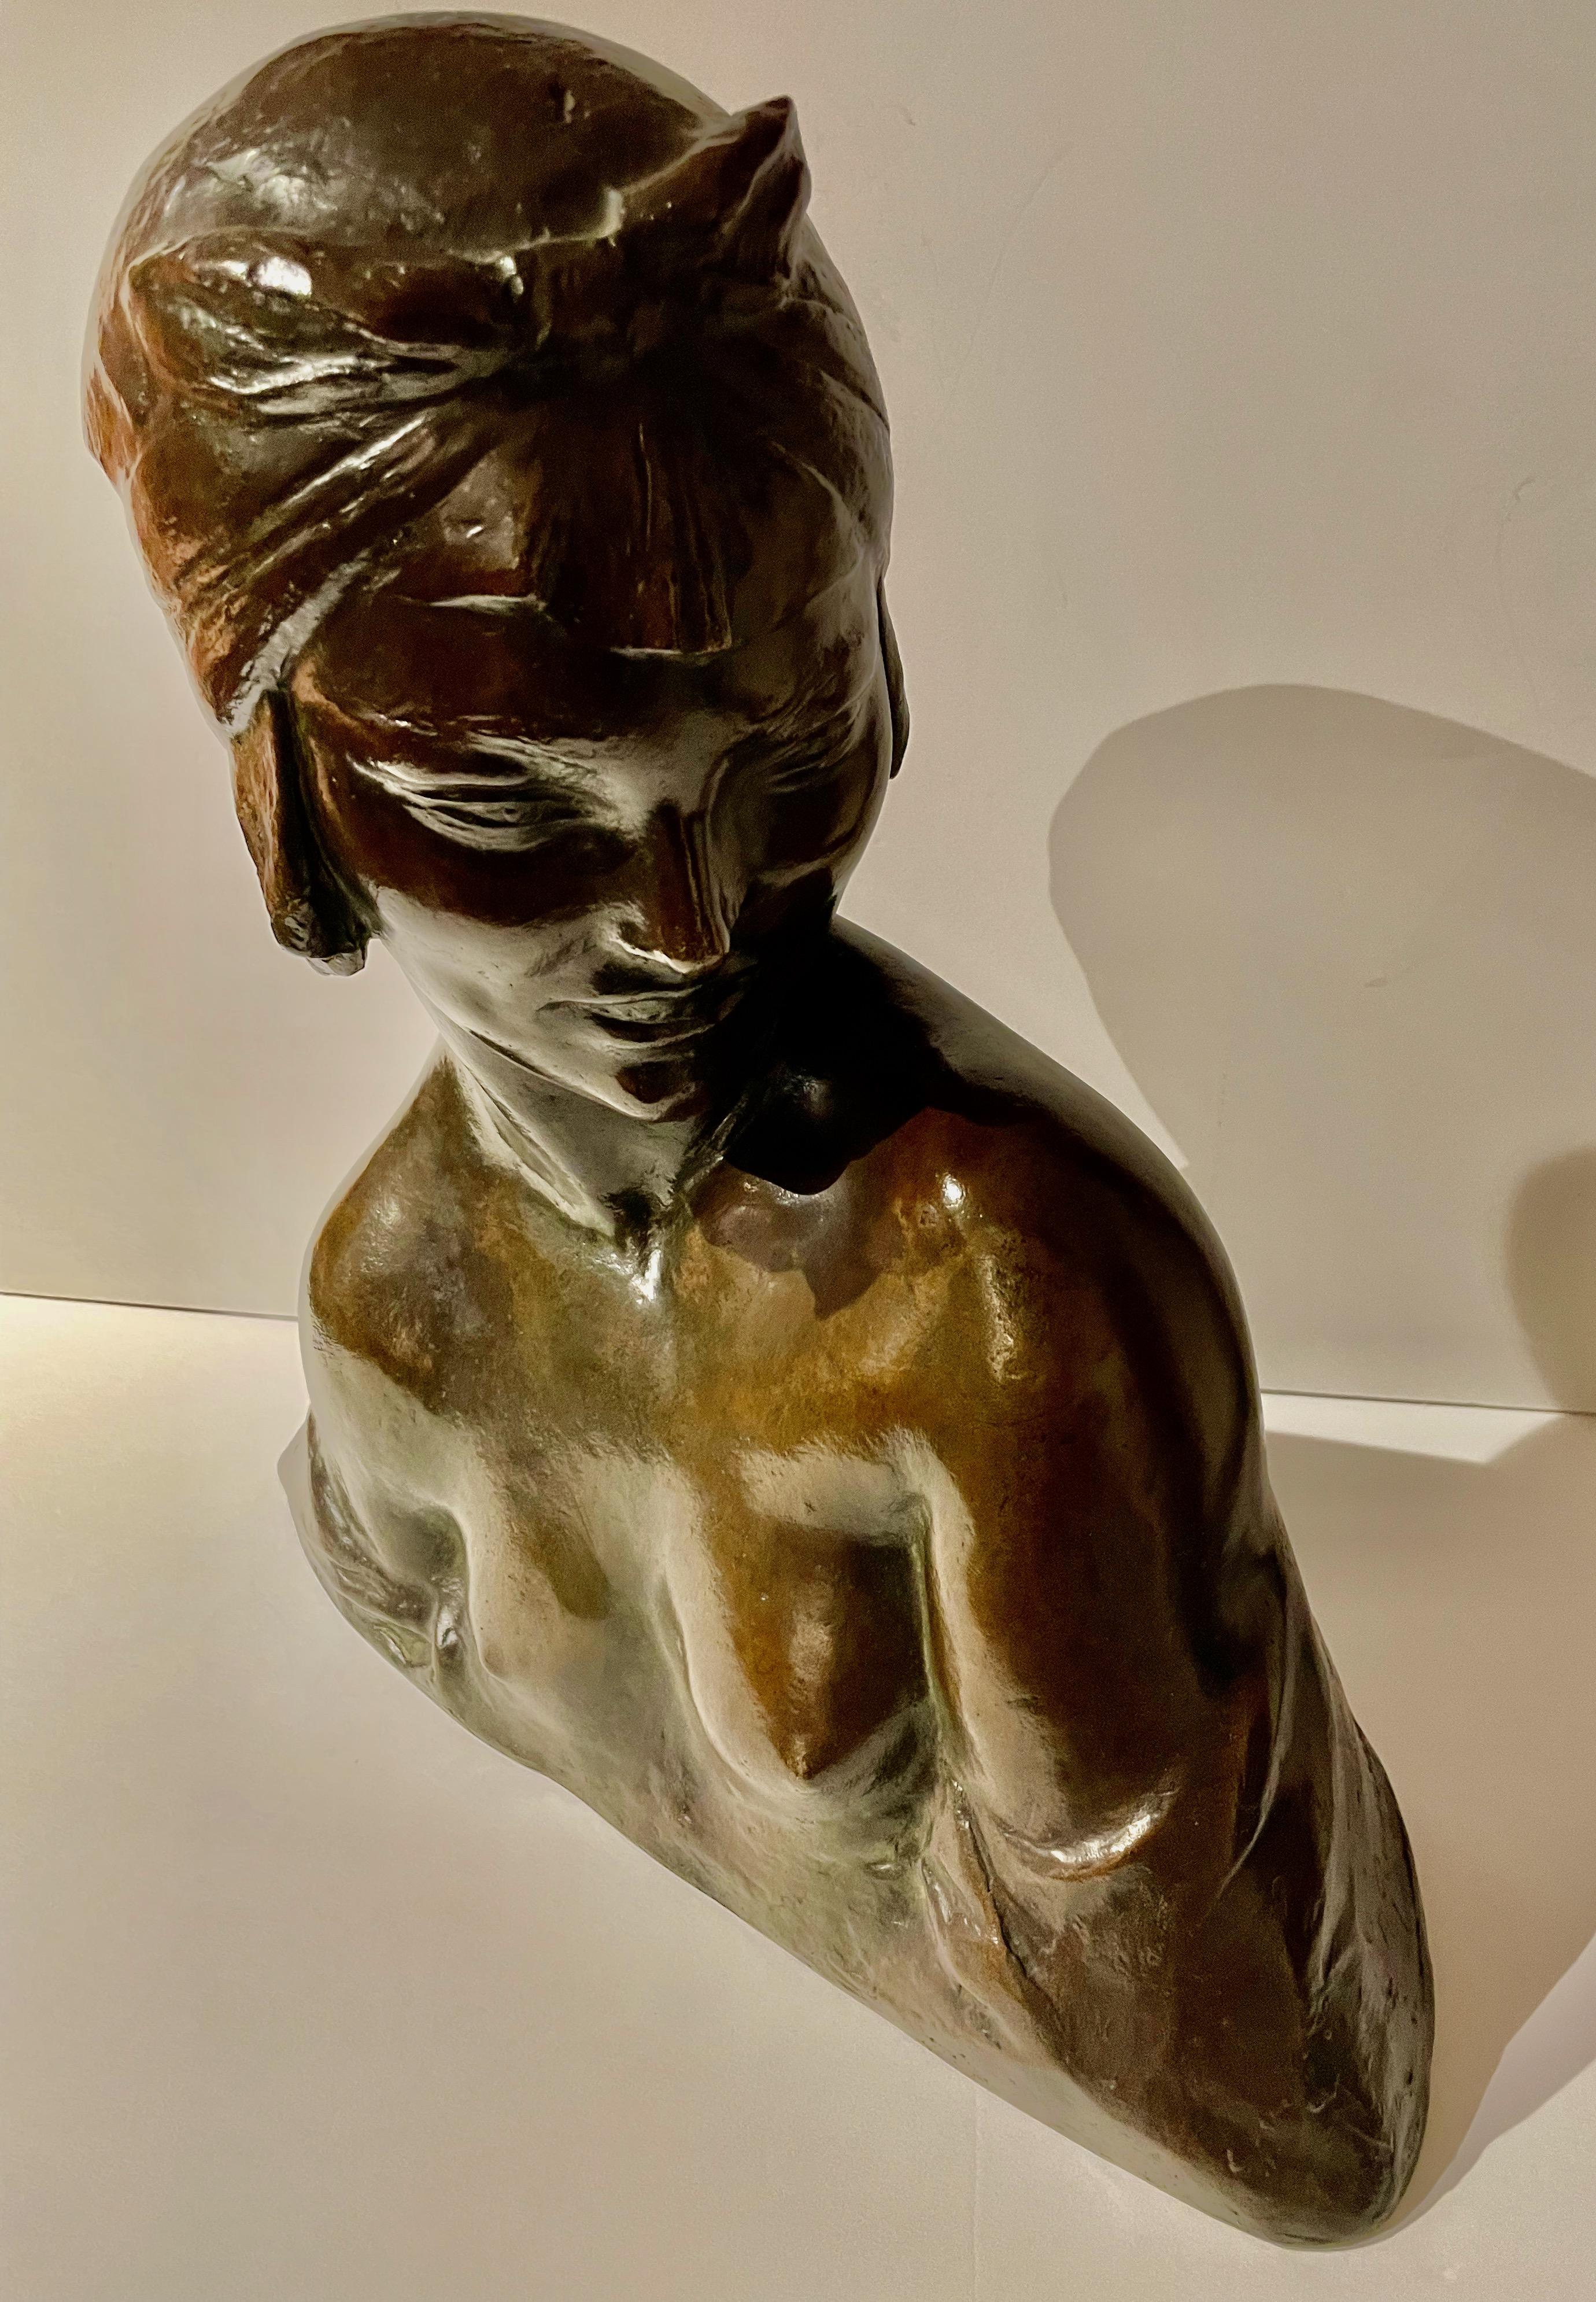 Originalbüste aus patinierter Bronze von Amedeo Gennarelli, um 1925. Das leicht nackte Modell ist von der Schulter aus mit einem stilisierten Turban auf dem Kopf dargestellt. Die tiefe Bronzepatina ist im Guss signiert 'A.Genneralli'. Das Modell hat